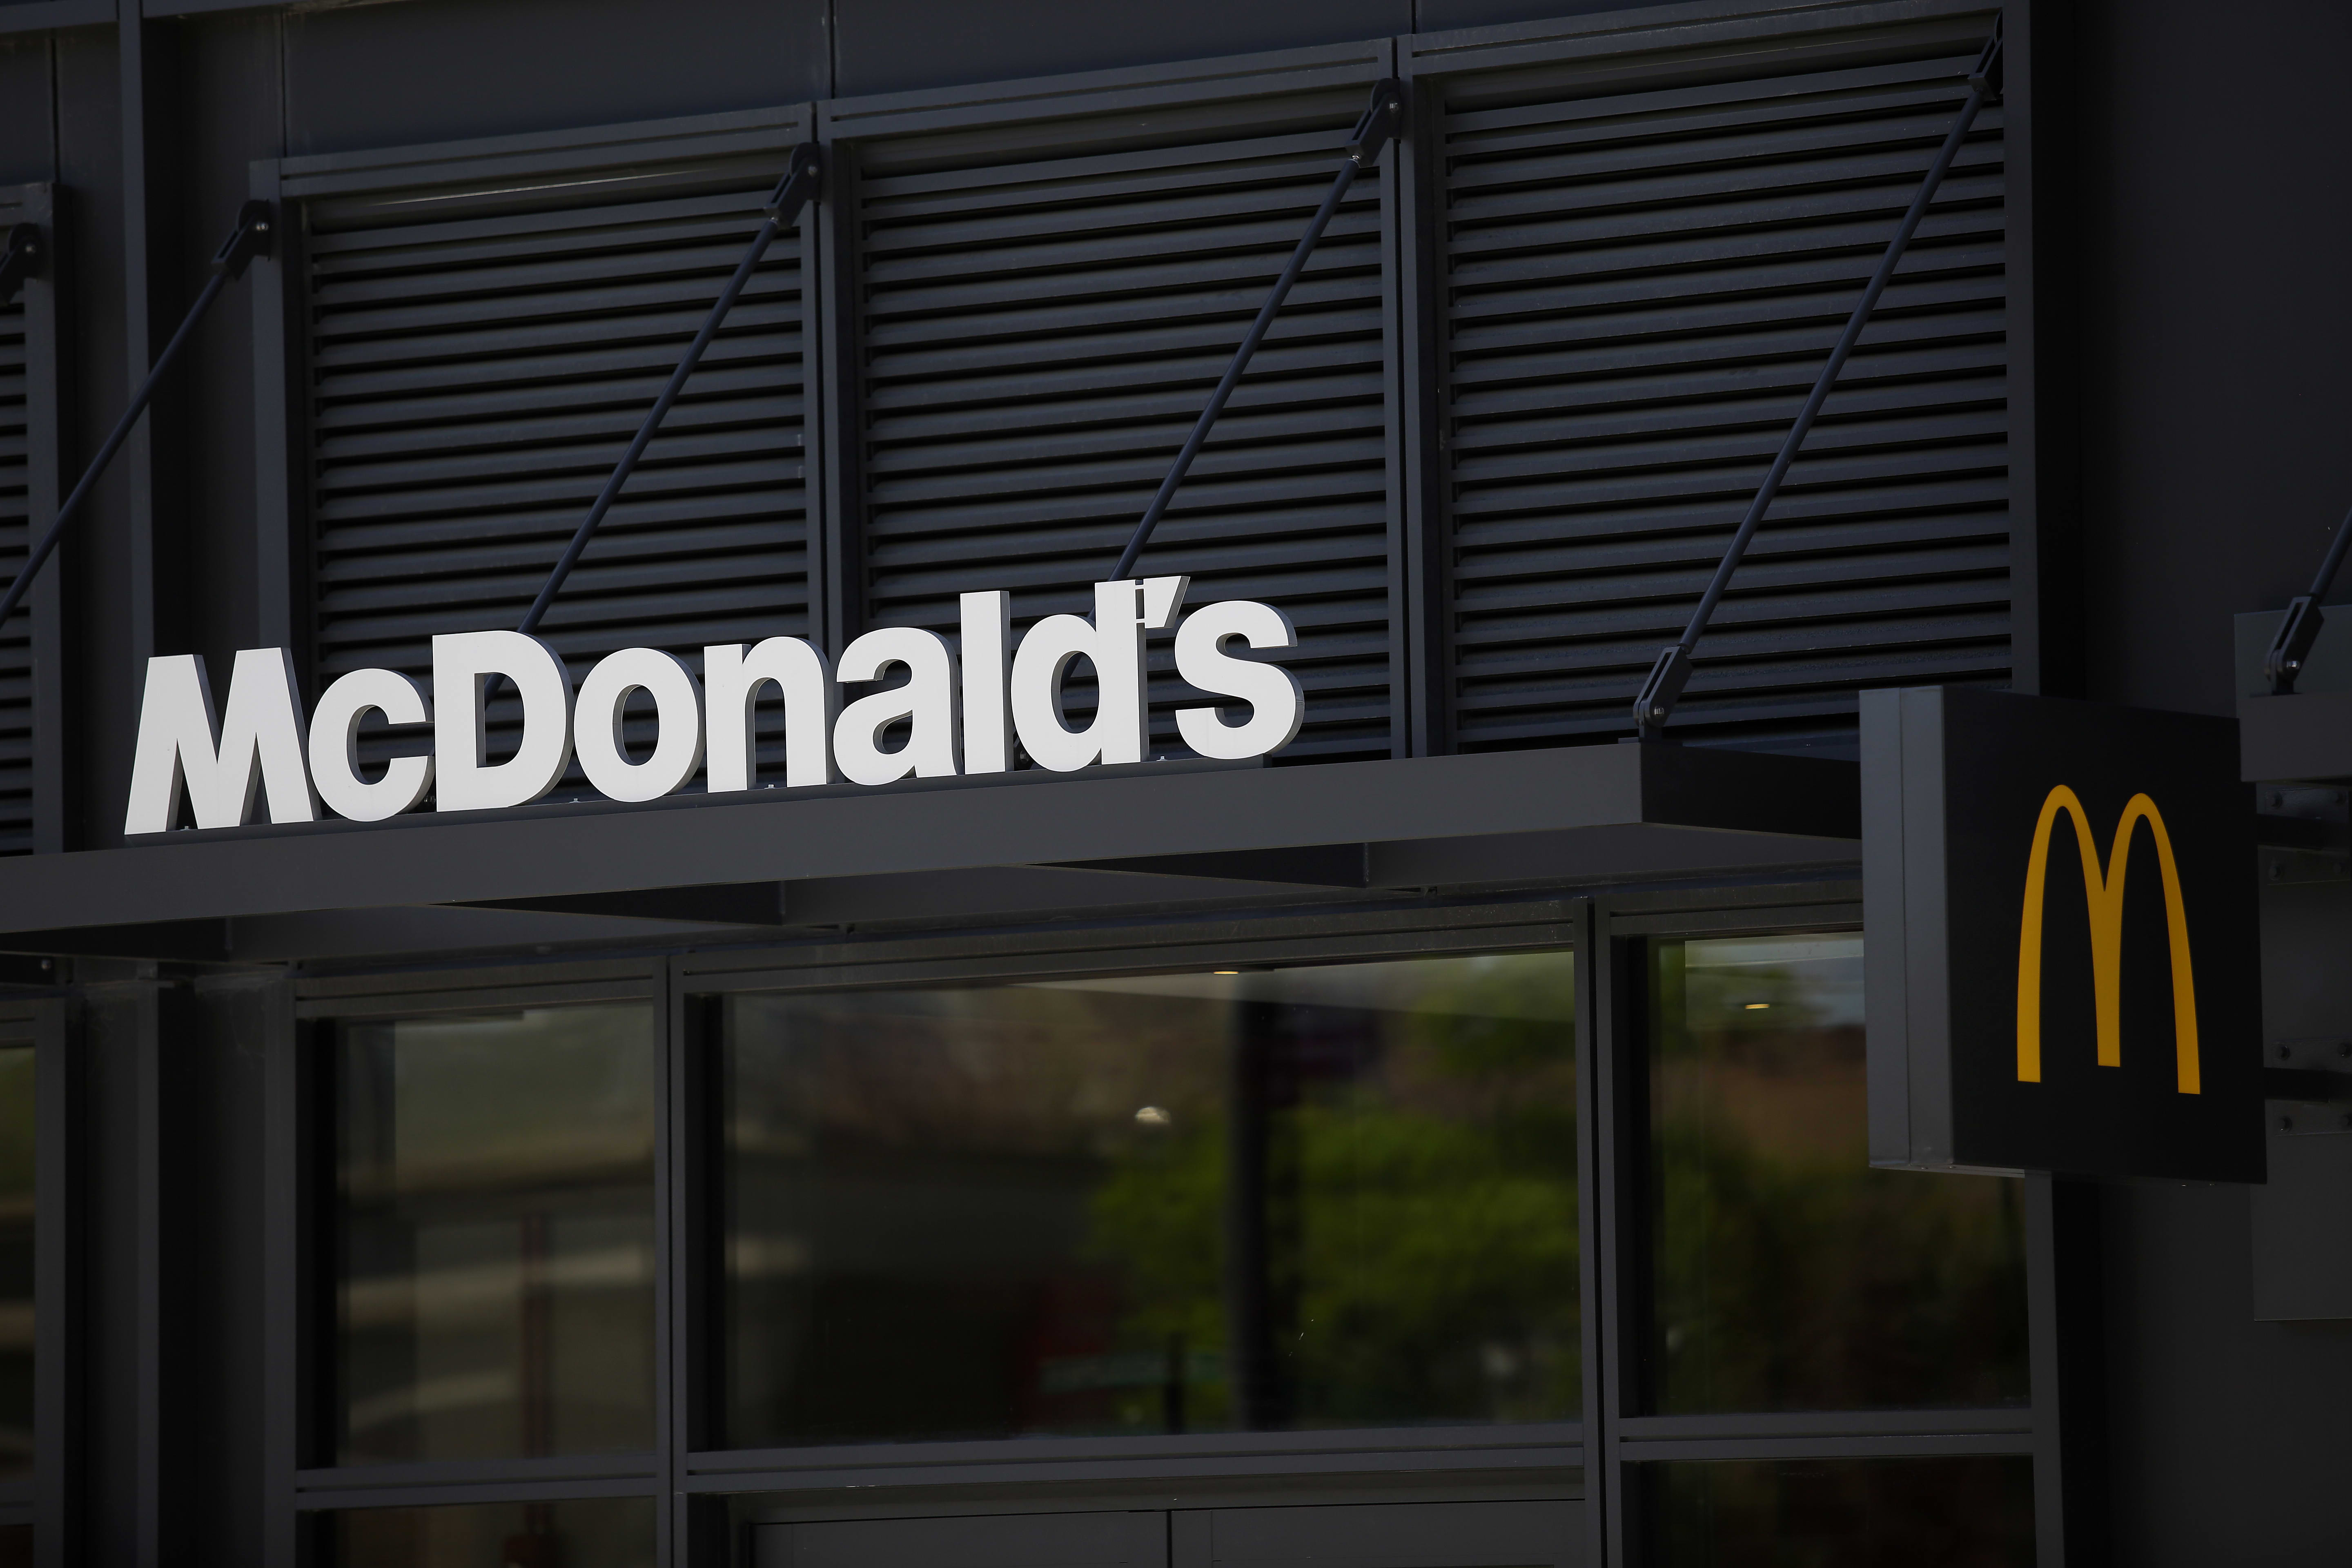 McDonald’s chiude gli uffici aziendali mentre i lavoratori attendono i licenziamenti